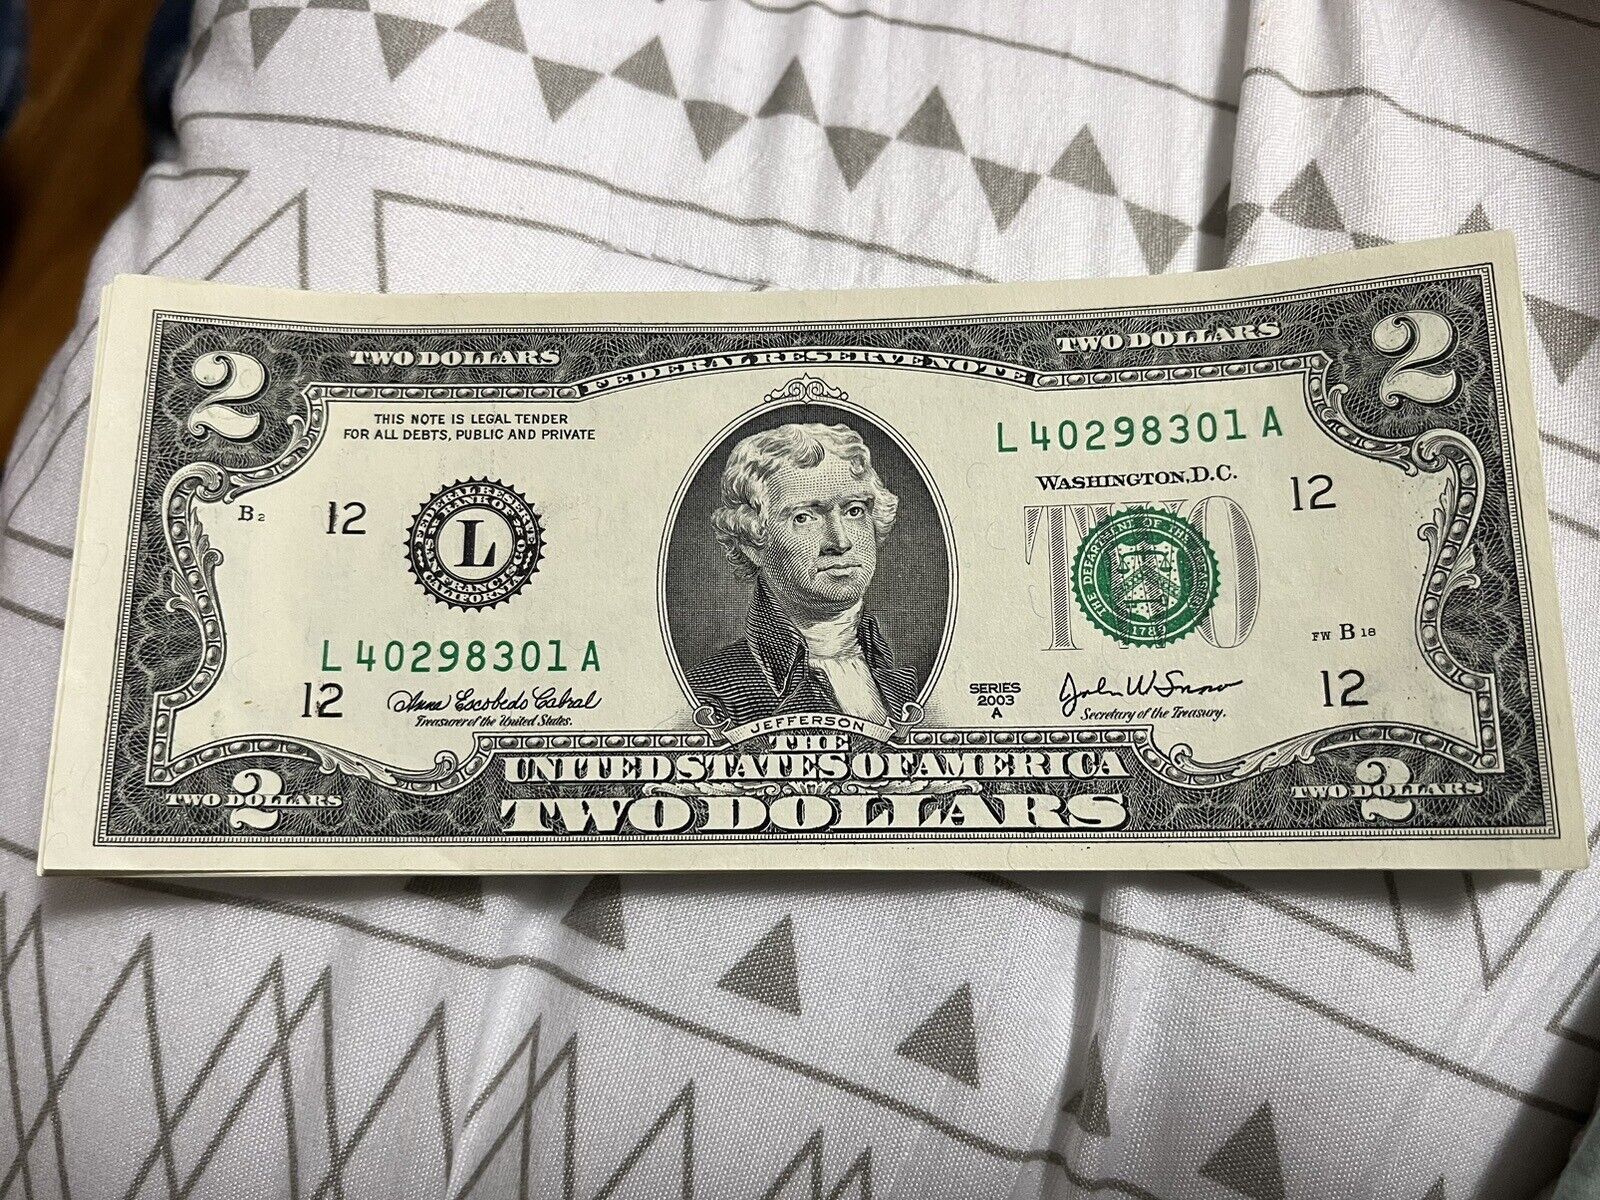 2003 Series A 2 dollar bill